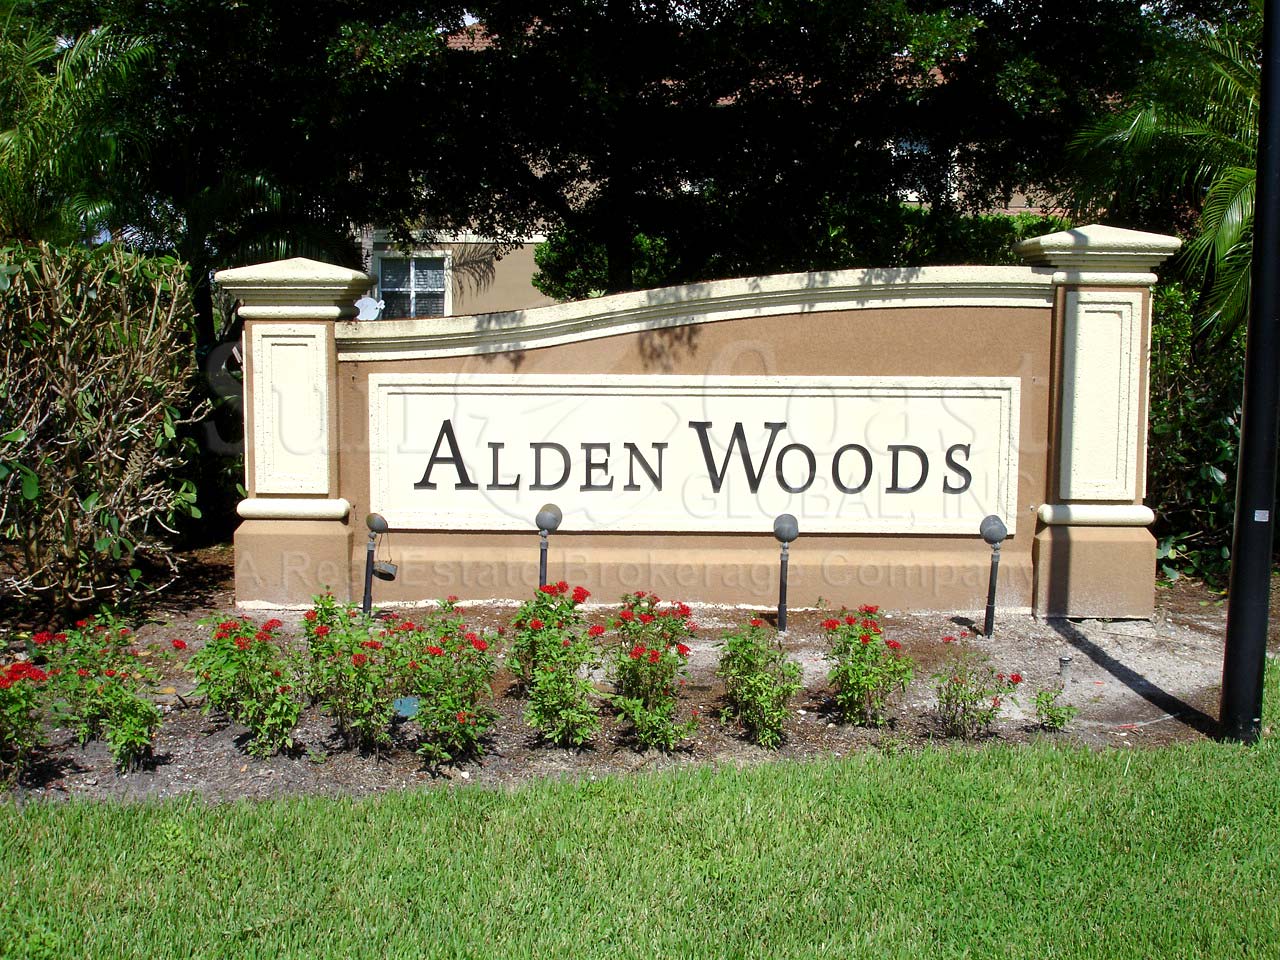 Alden Woods signage